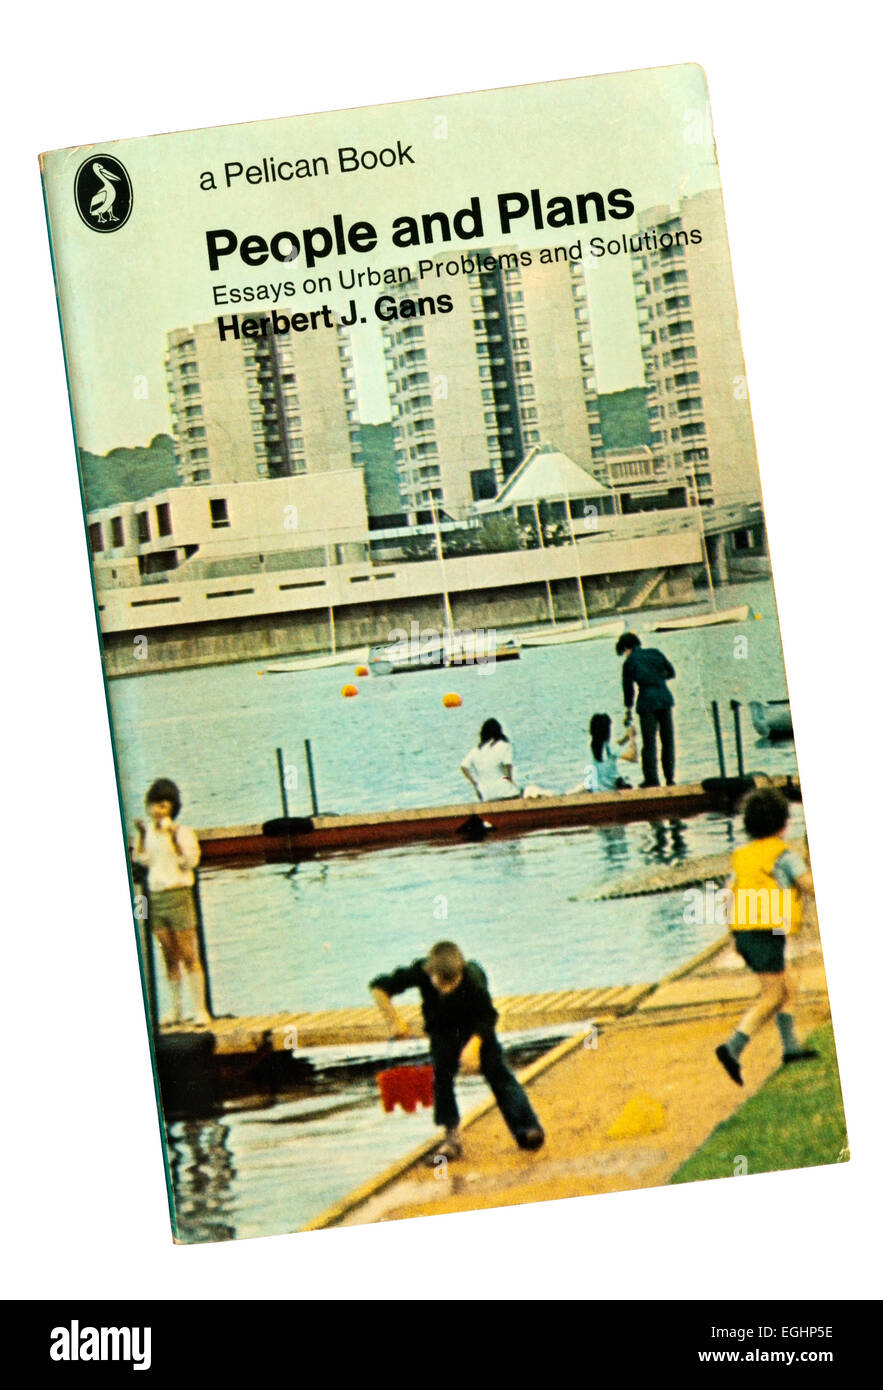 Personas y planes : ensayos sobre problemas y soluciones urbanas por Herbert J. Gans fue publicado por primera vez en 1968. Foto de stock